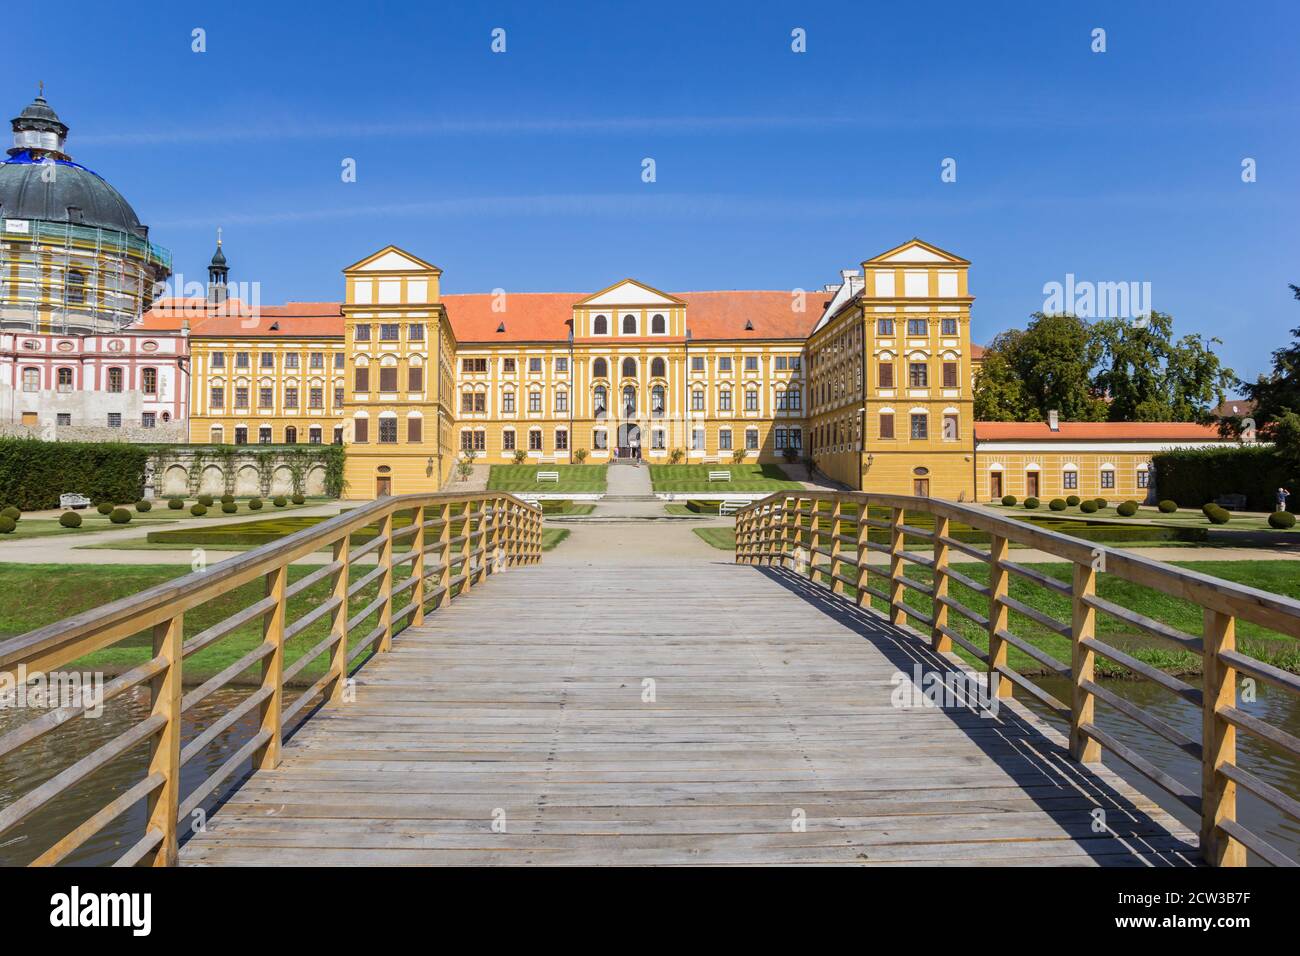 Pont en bois du château historique de Jaromerice nad Rokytnou, République tchèque Banque D'Images